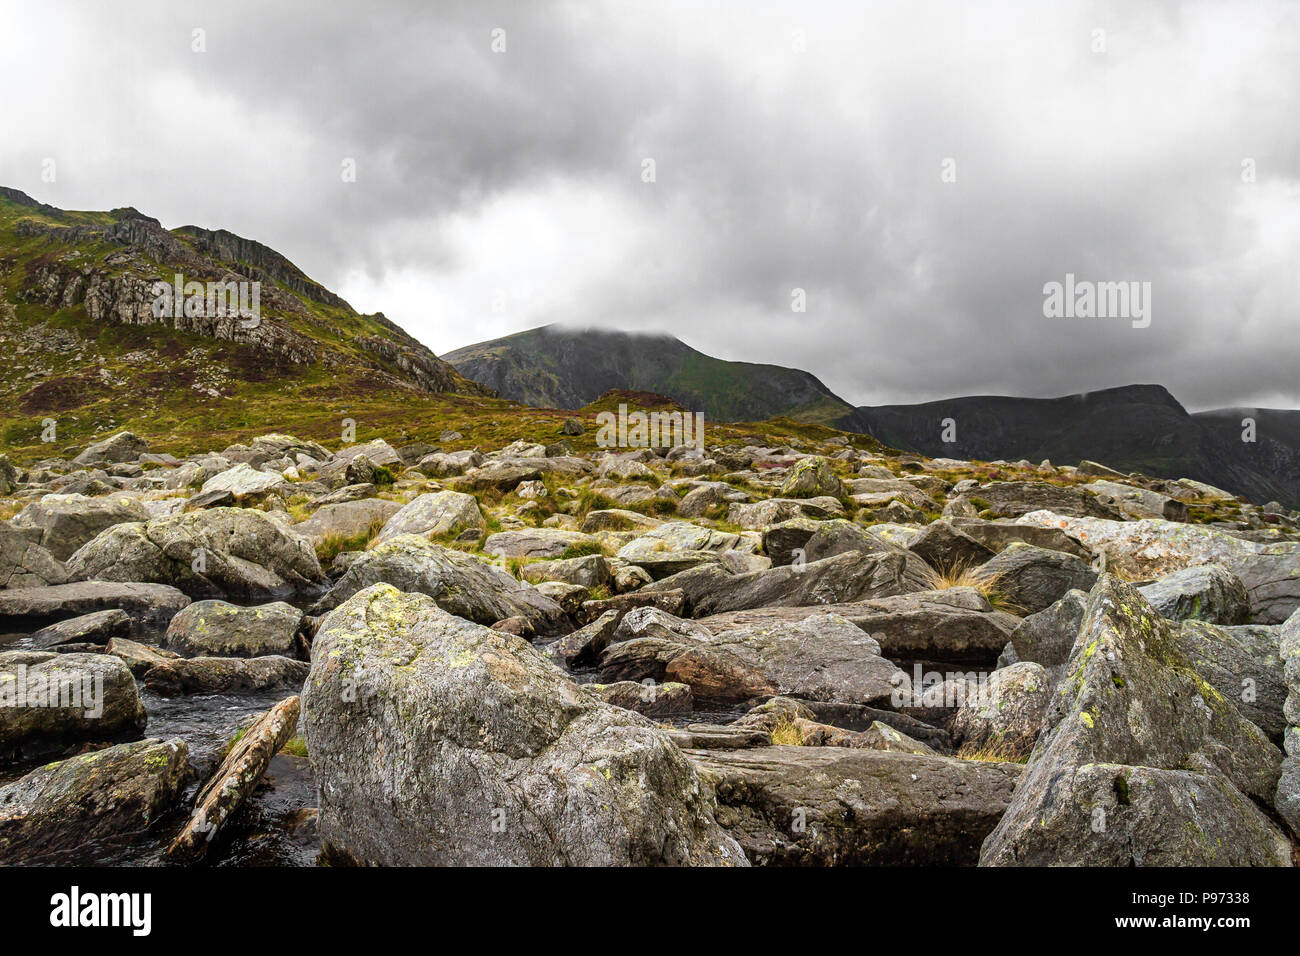 In corrispondenza del bordo roccioso di un lago di montagna cercando su-reparti al cloud coperti picchi. Foto Stock